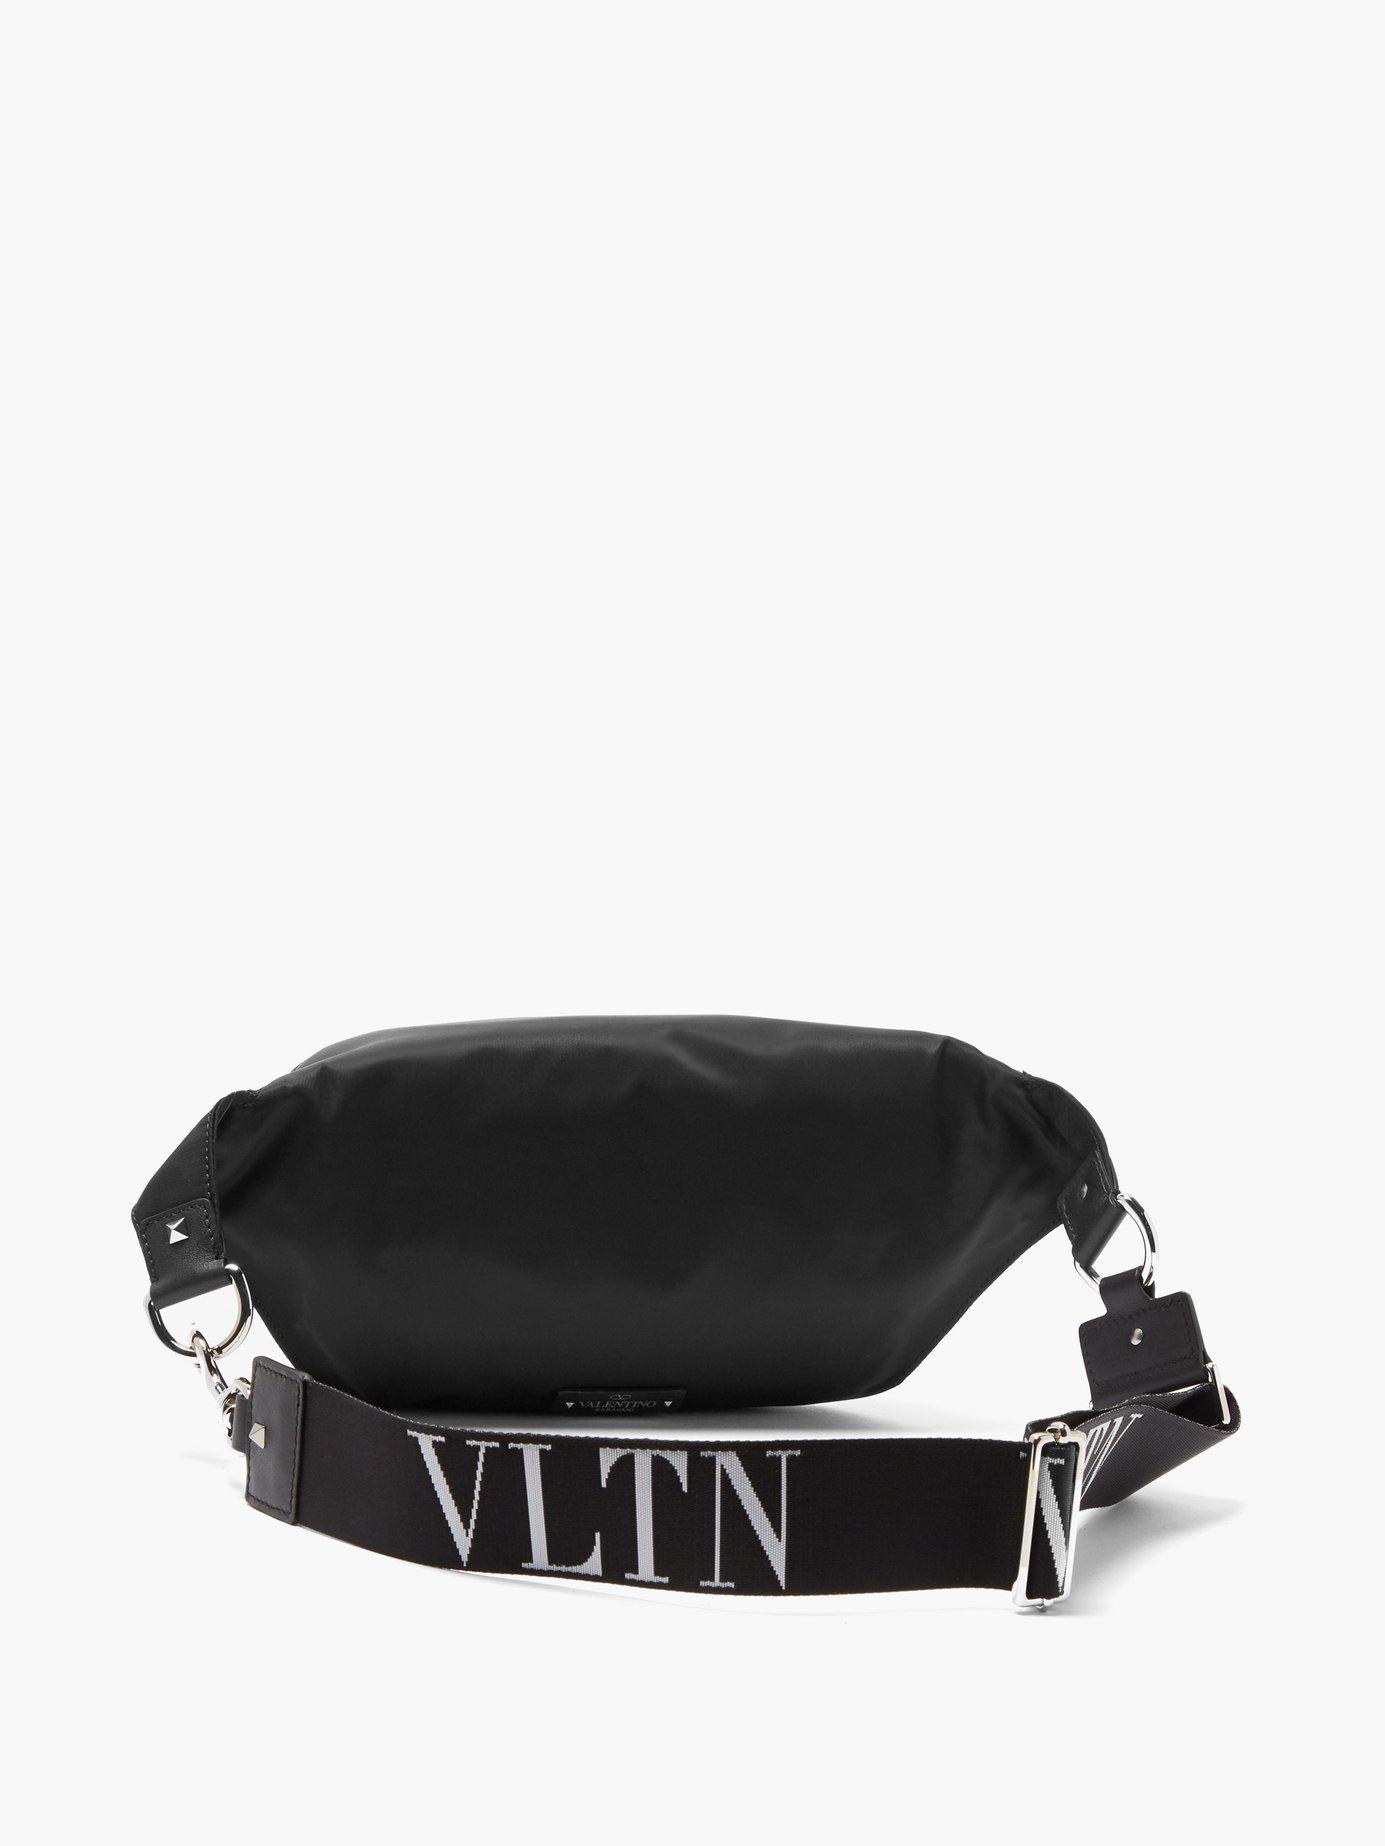 Valentino Vltn Jacquard Rockstud Belt Bag in Black for Men - Lyst